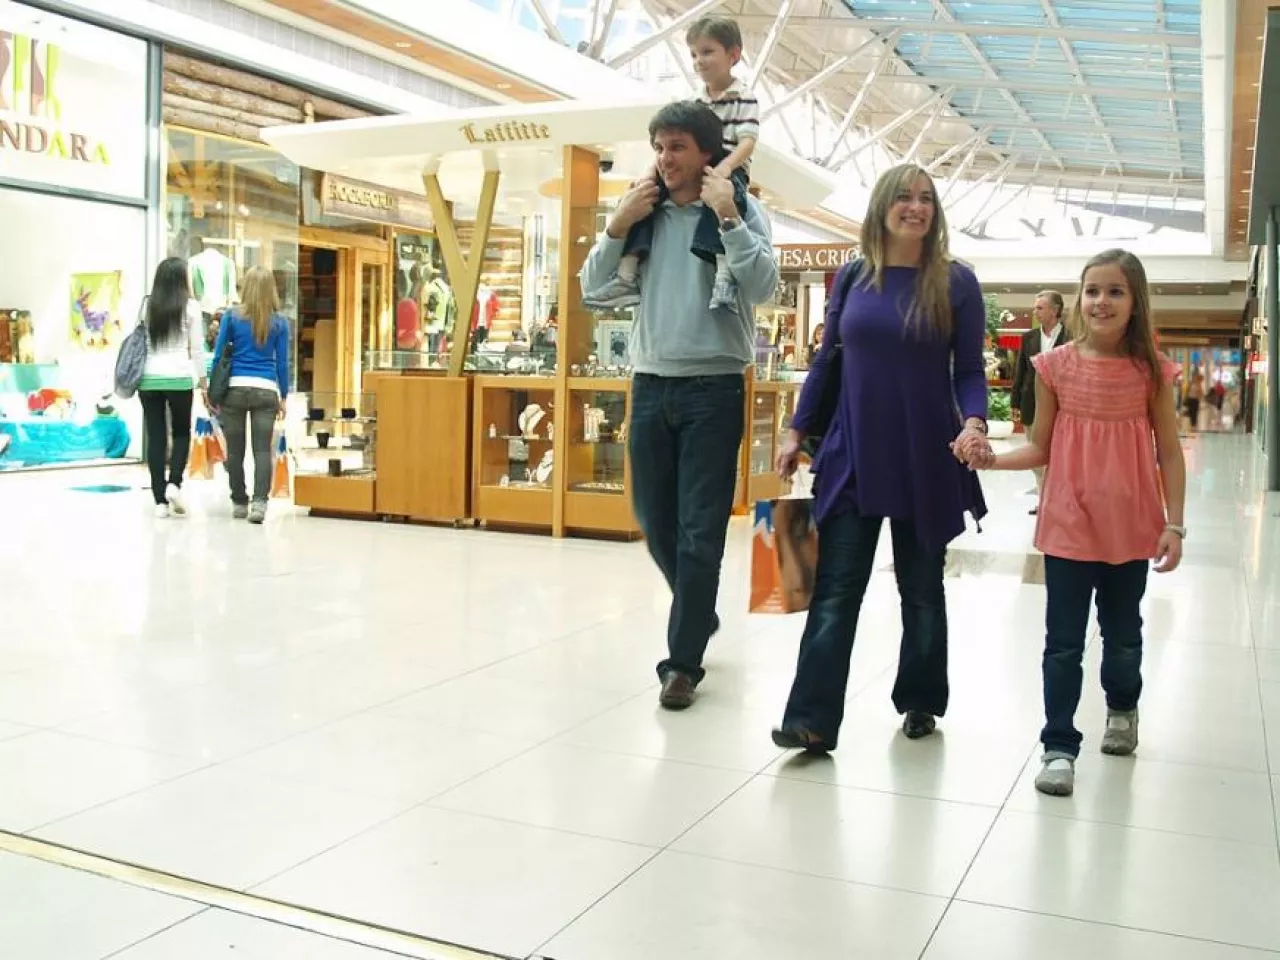 Centra handlowe mogą i powinny być przyjazne dla dzieci (fot. Wikimedia Commons/Errefe, na lic. CC BY-SA 3.0)